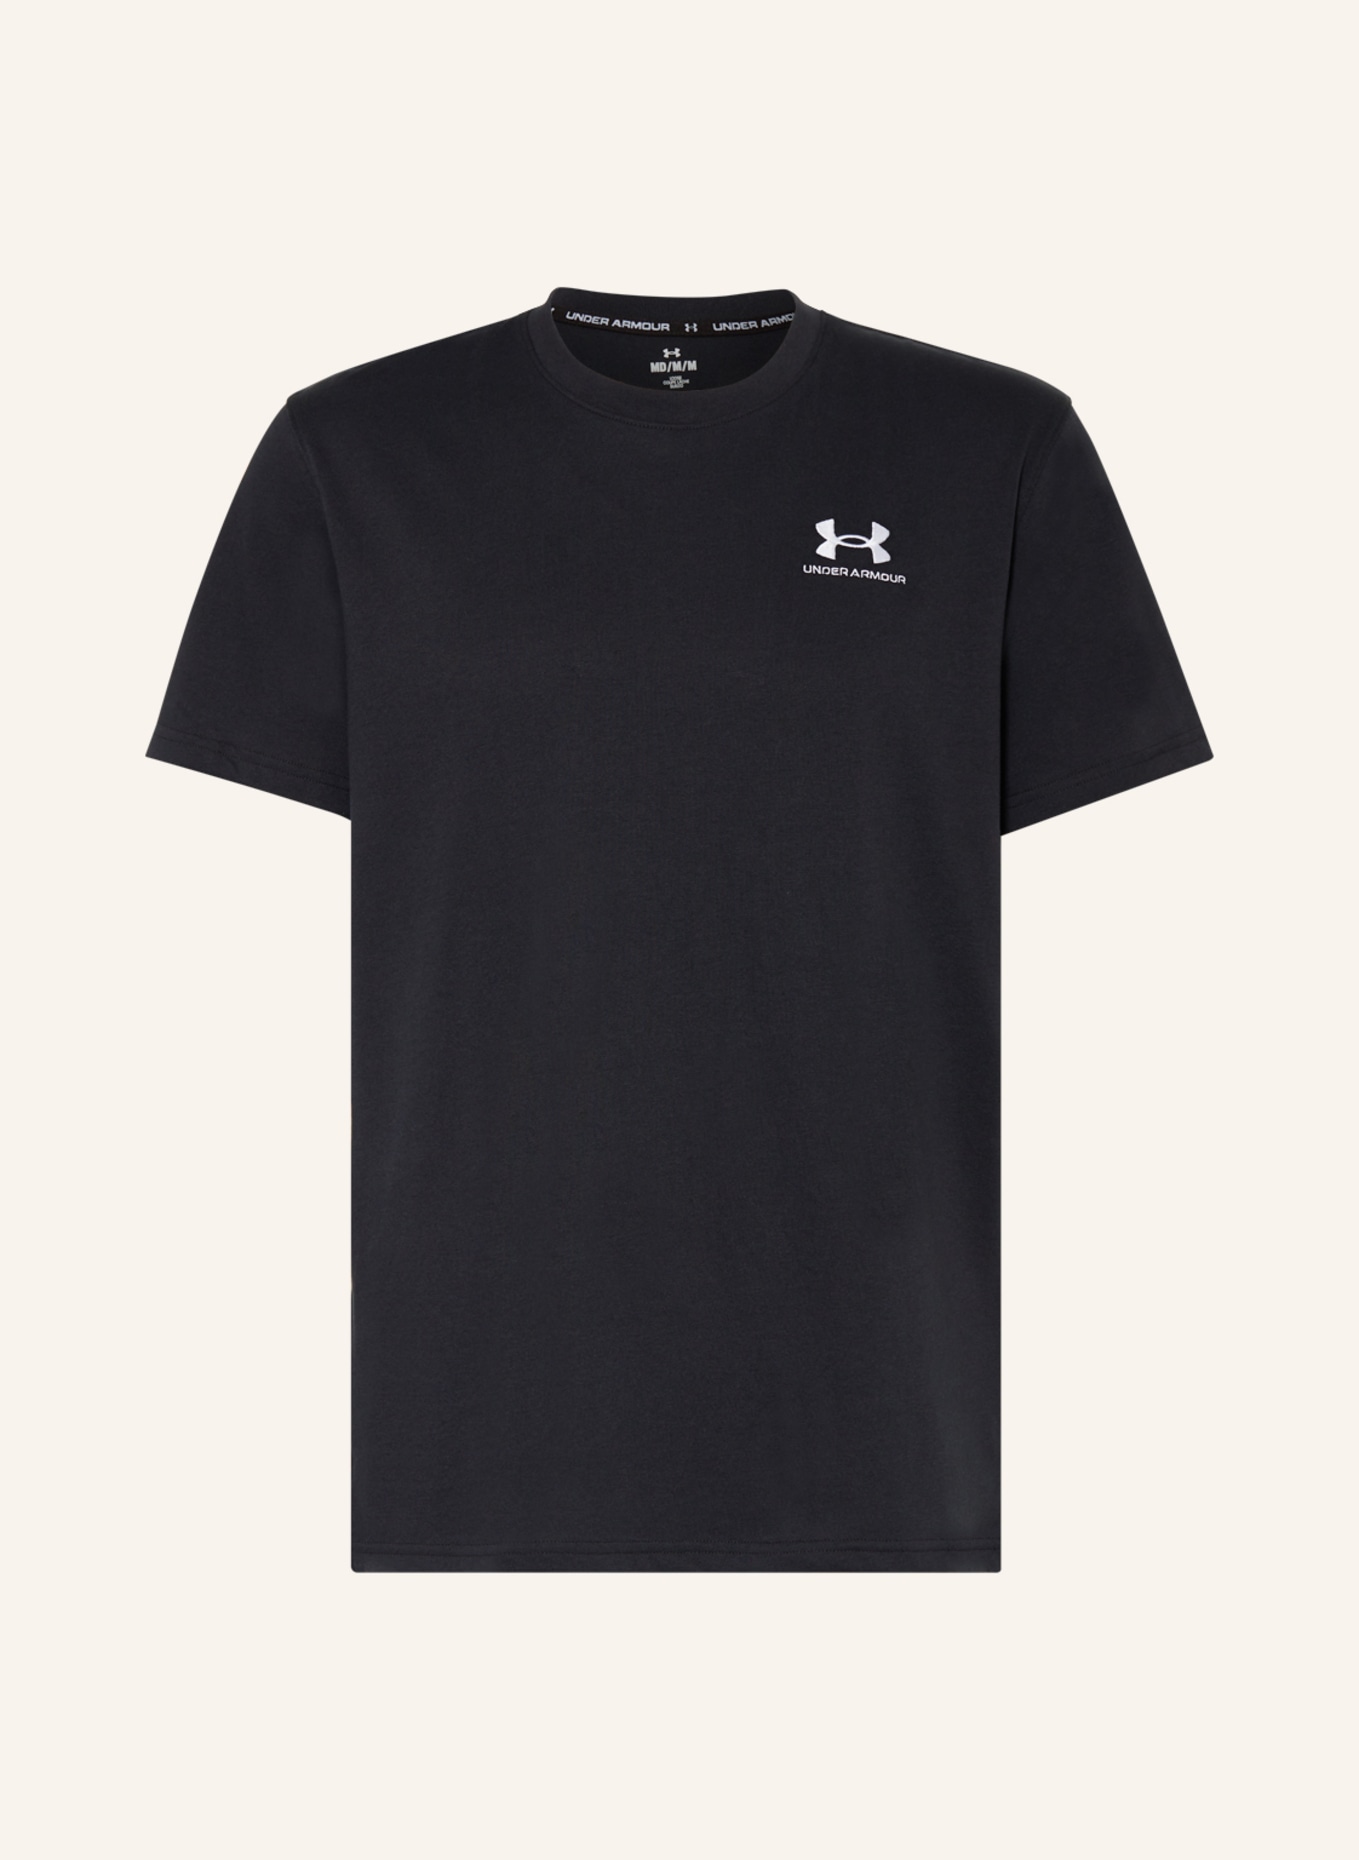 UNDER ARMOUR T-Shirt HEAVYWEIGHT, Farbe: SCHWARZ (Bild 1)